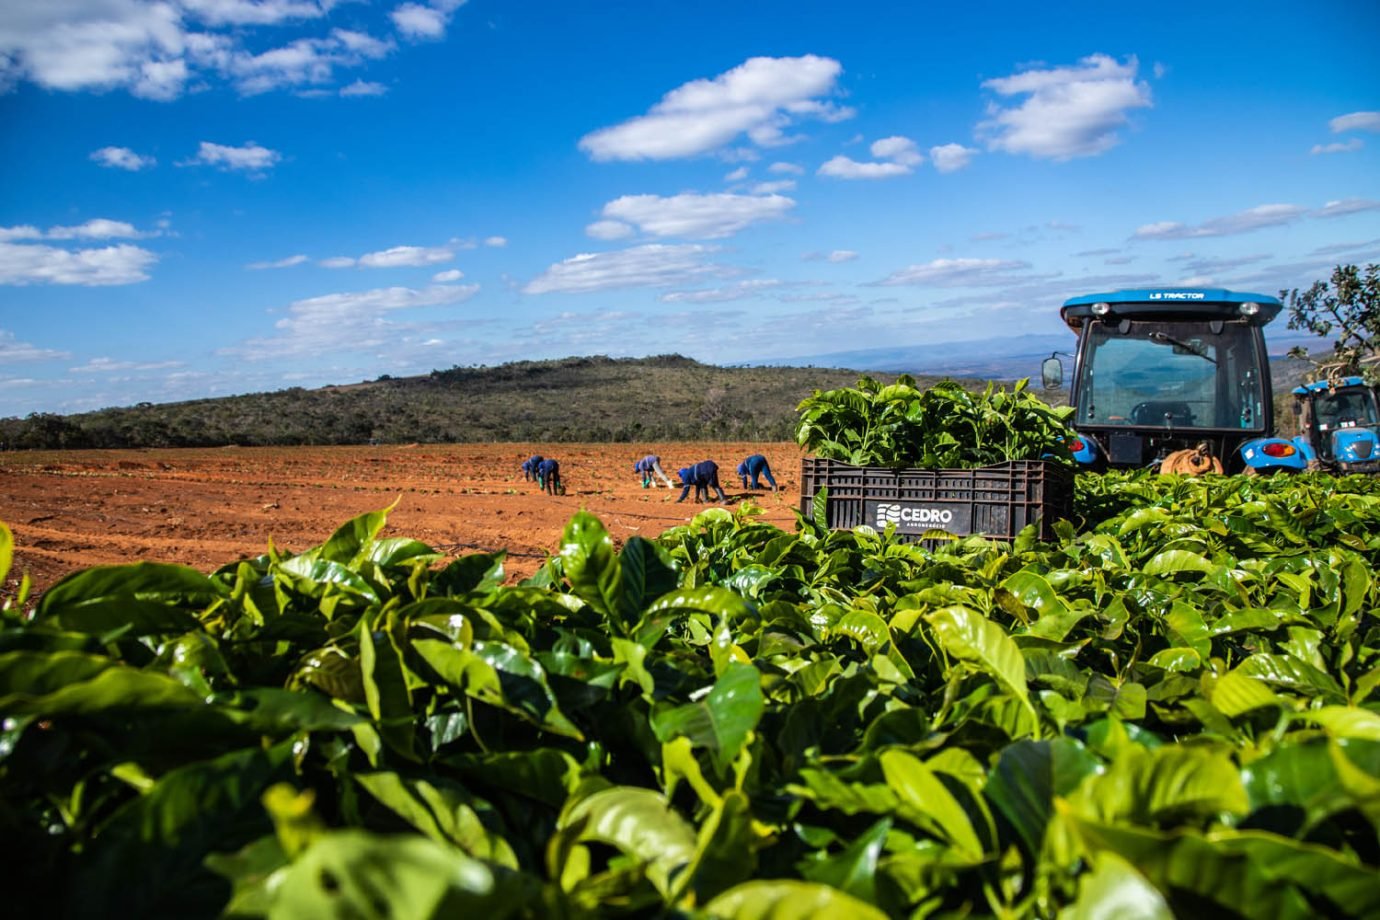 Fazenda de Café do Grupo Cedro em Minas Gerais - agricultor - agricultura - agronegocios - agro - lavoura - maquinas - plantação - 

Foto: Leandro Fonseca
data: 20/06/2023